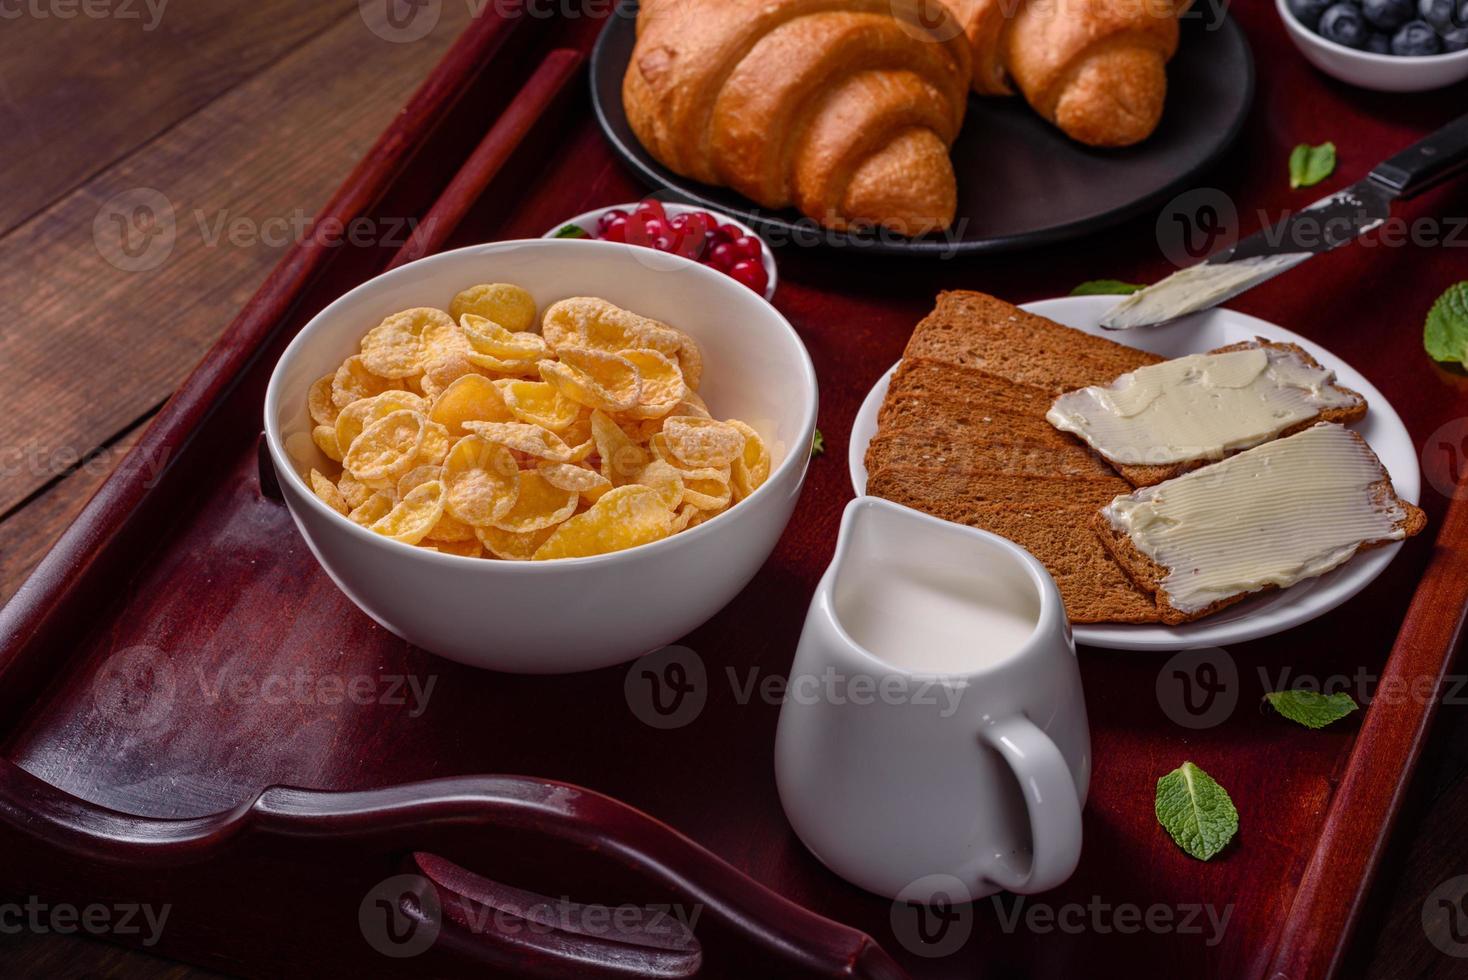 deliziosa colazione con croissant freschi e frutti di bosco maturi foto